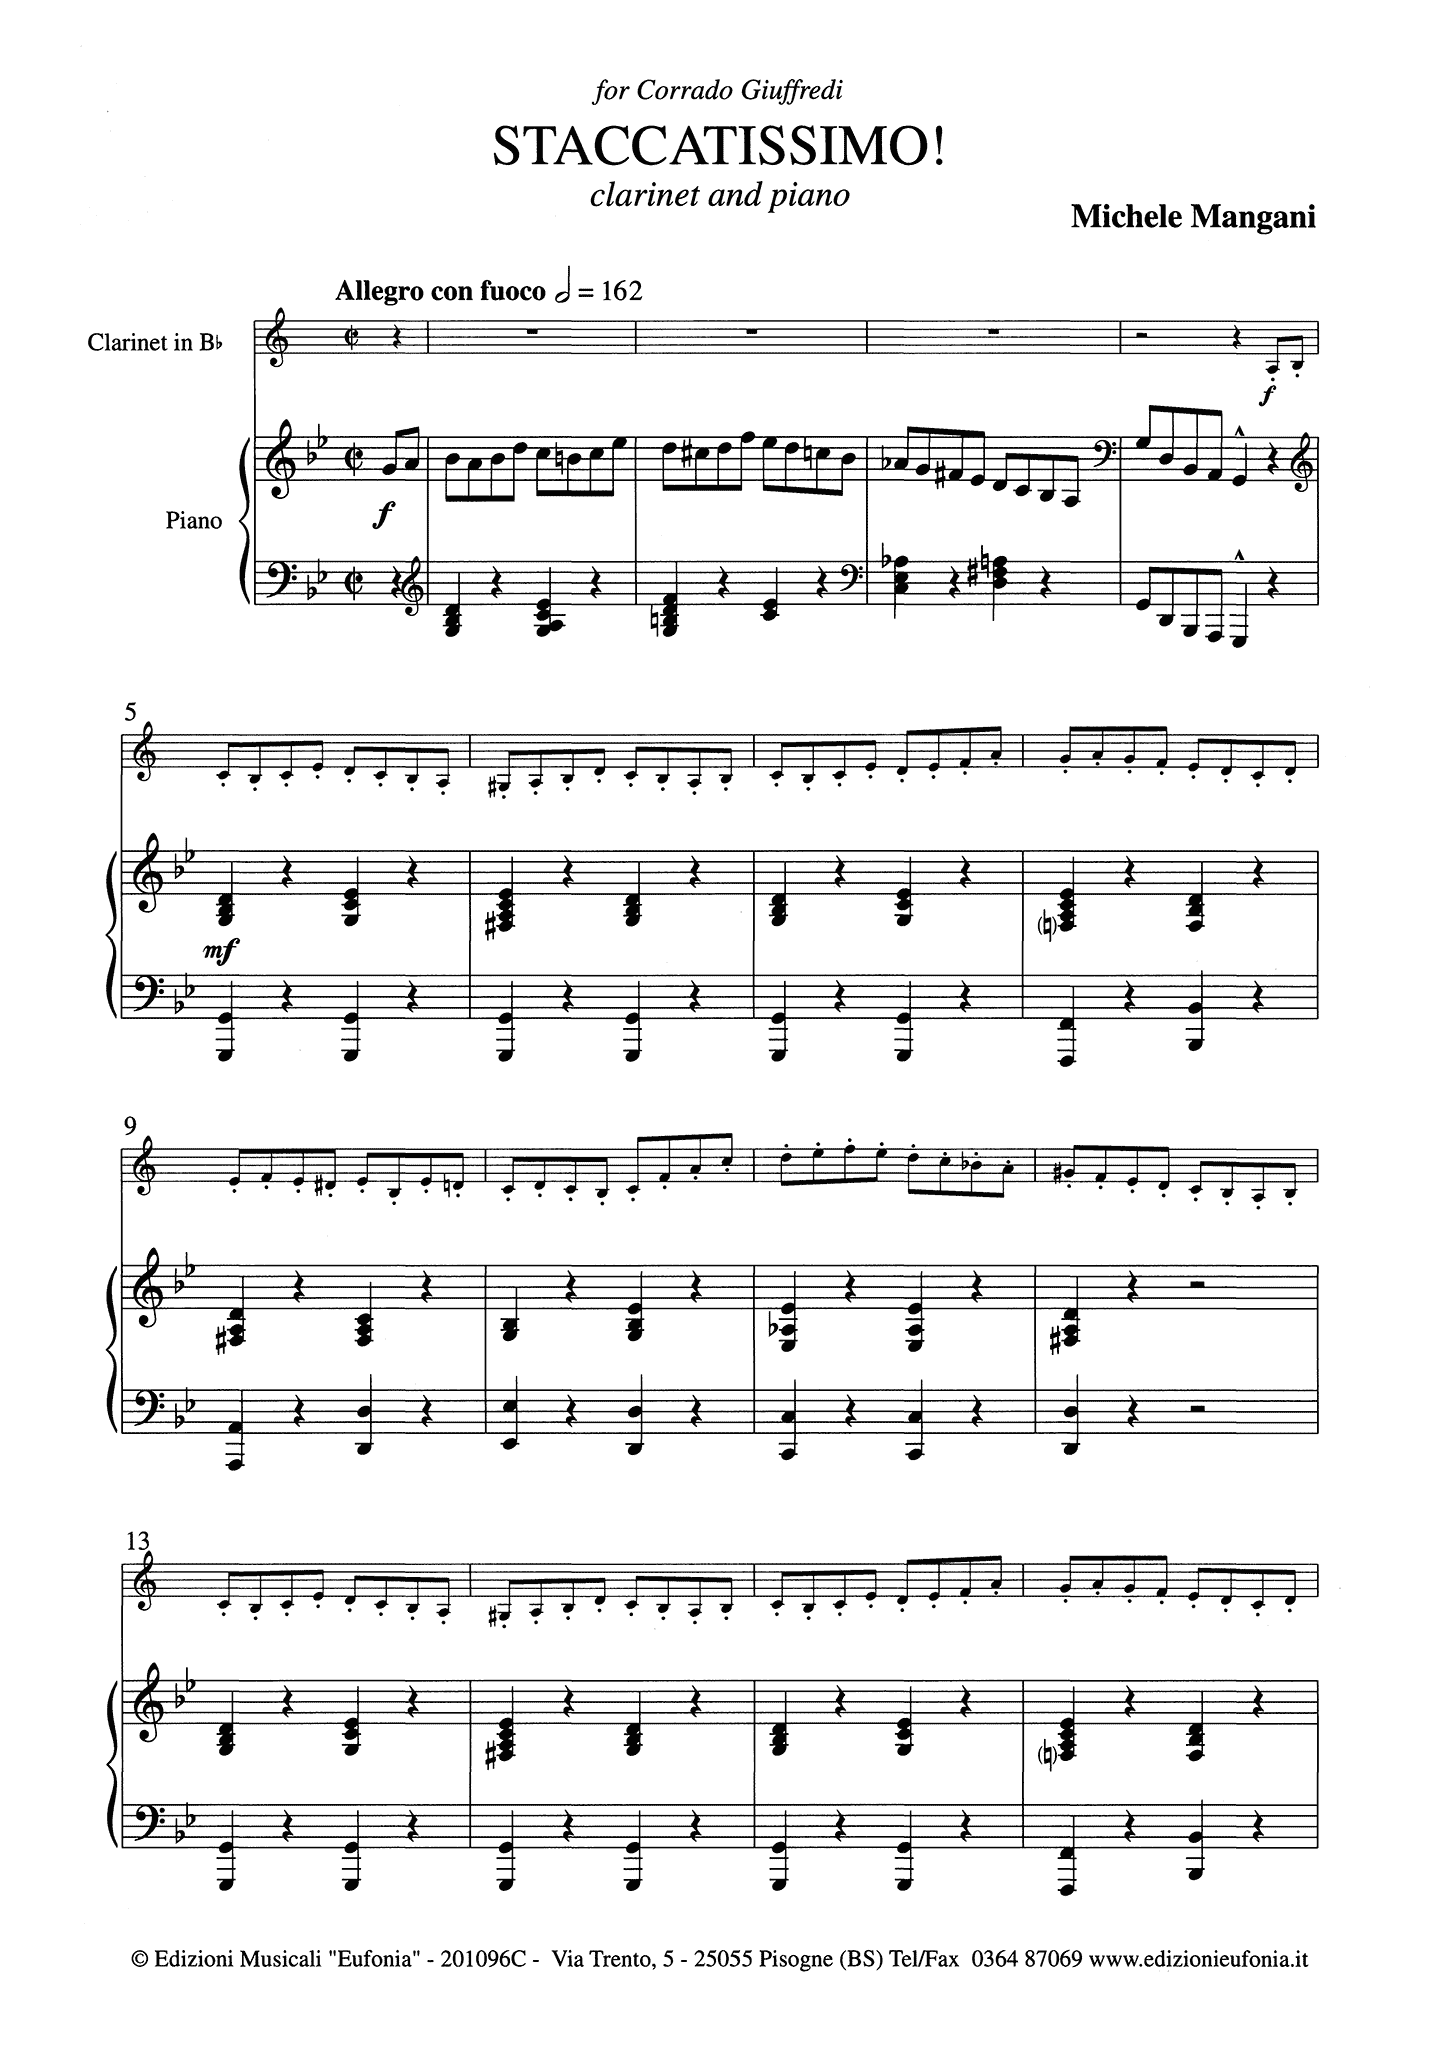 Mangani Staccatissimo! clarinet piano score